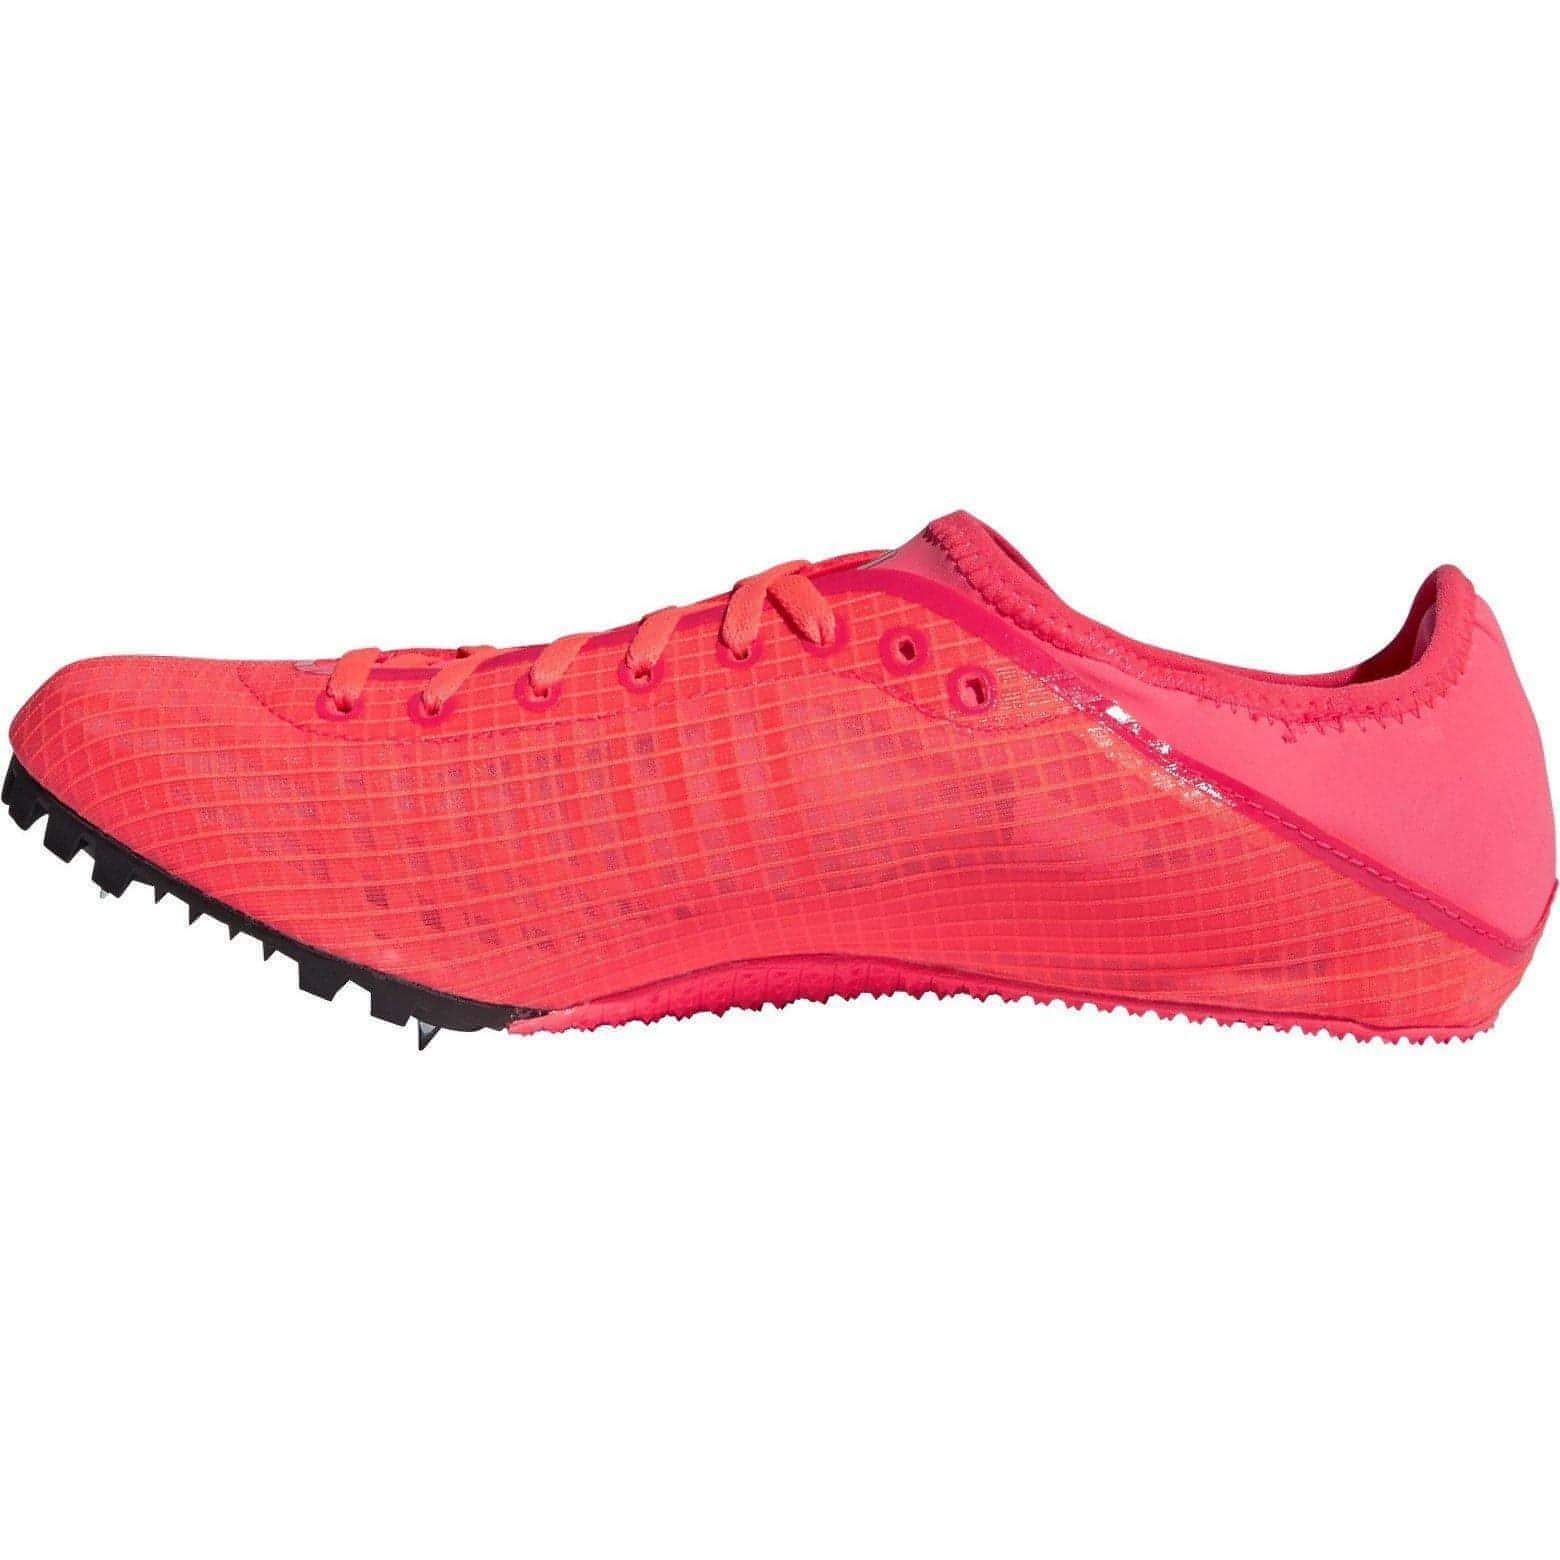 adidas Sprintstar Mens Running Spikes - Pink - Start Fitness